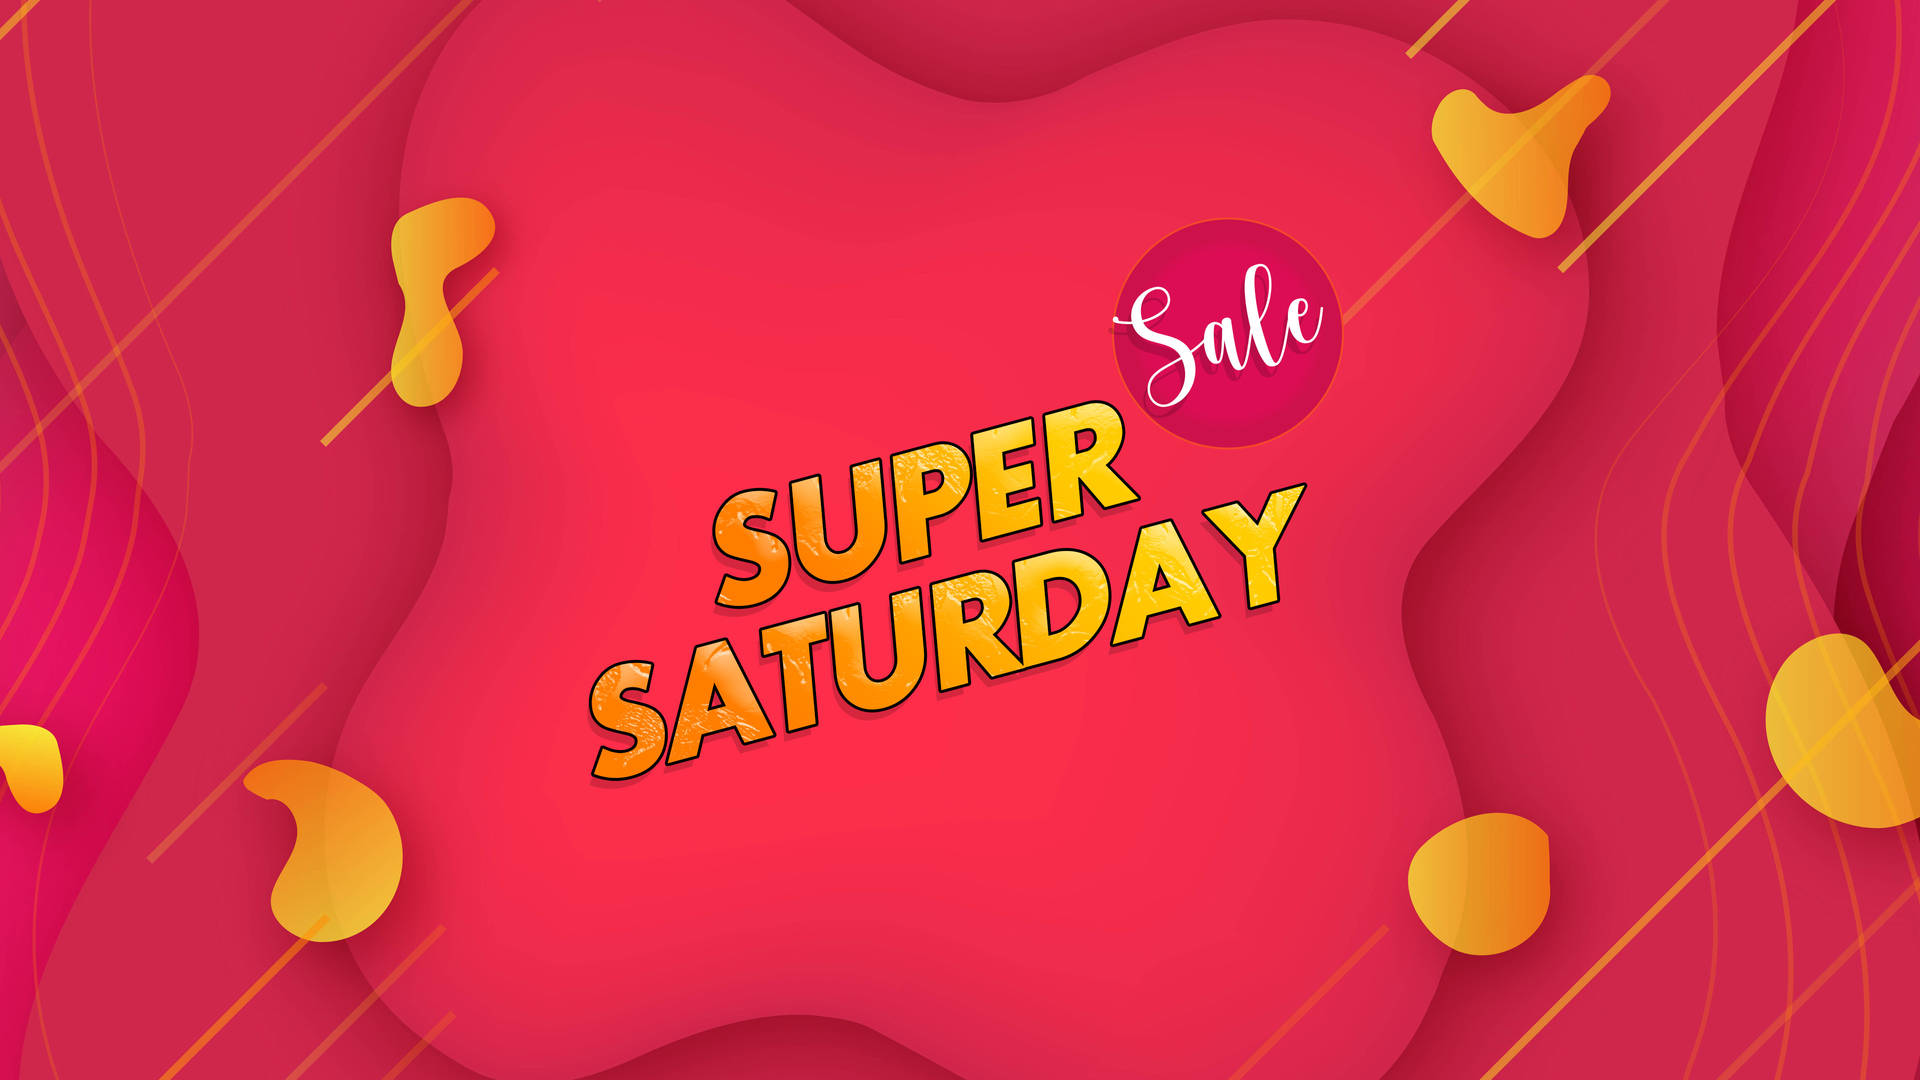 Super Saturday Sales Extravaganza!